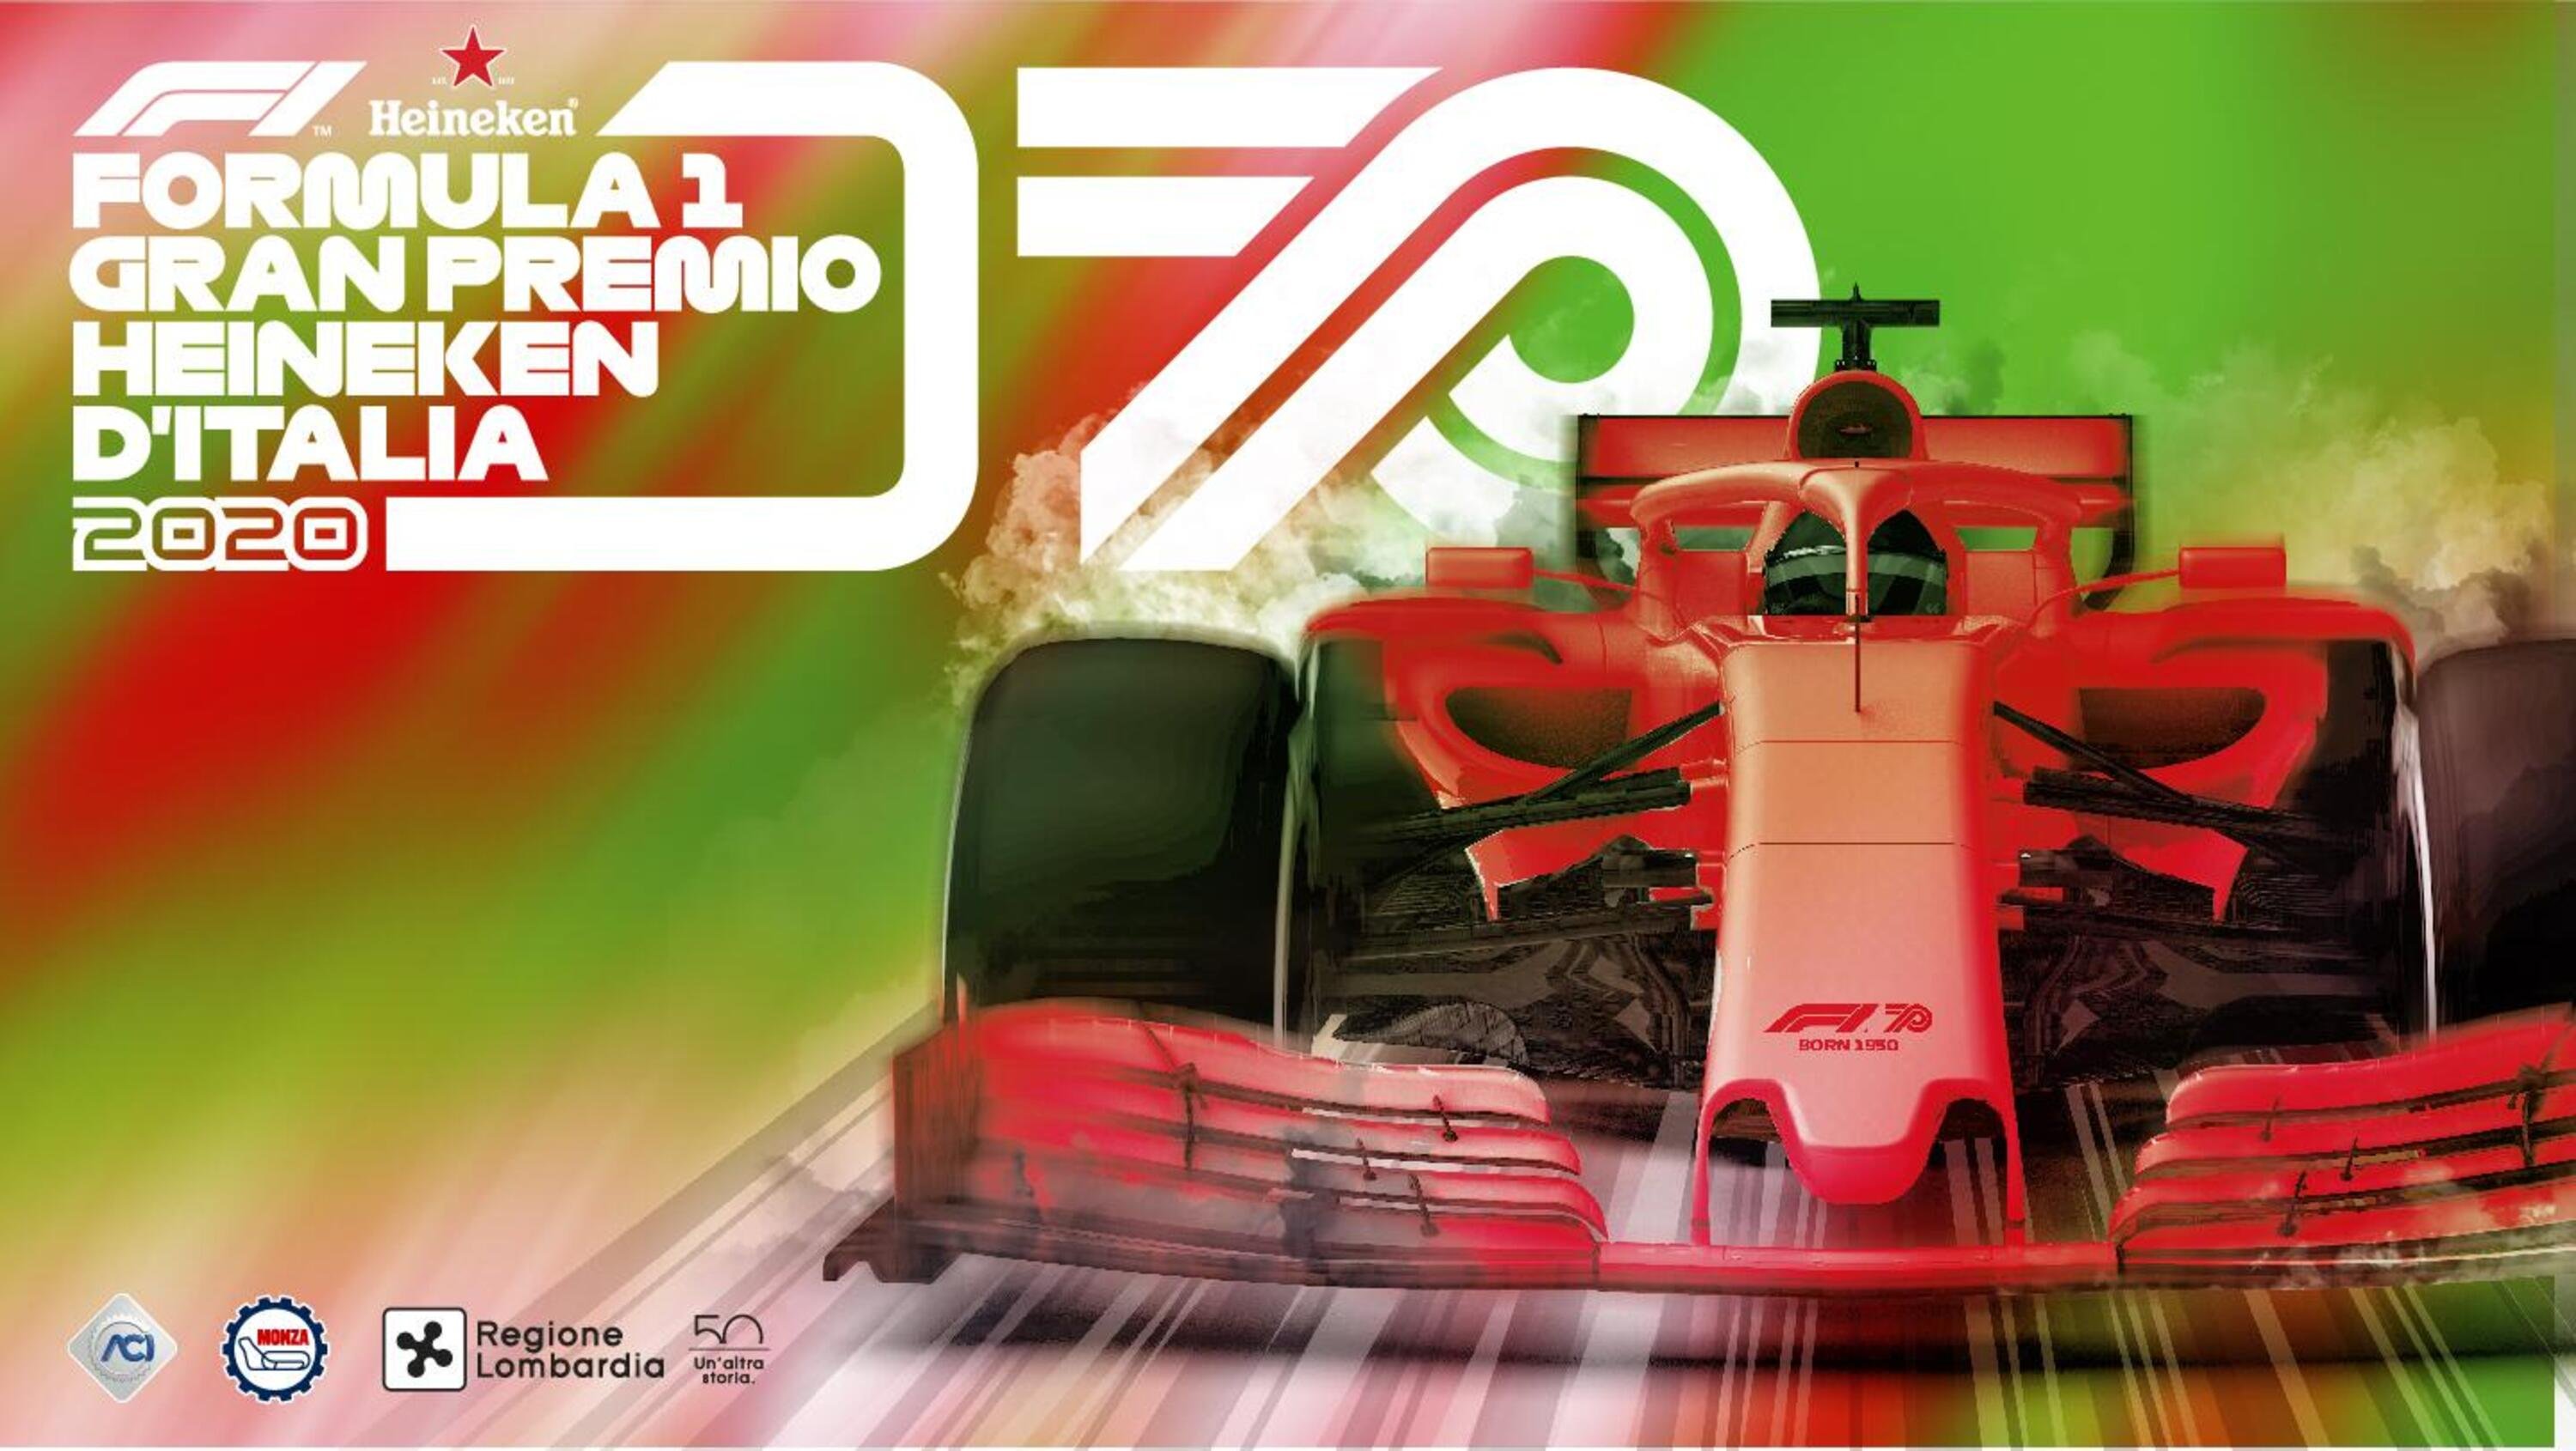 Colpaccio italiano in F1 con due Gran Premi 2020 di fila? Dopo Monza confermata si candida Imola